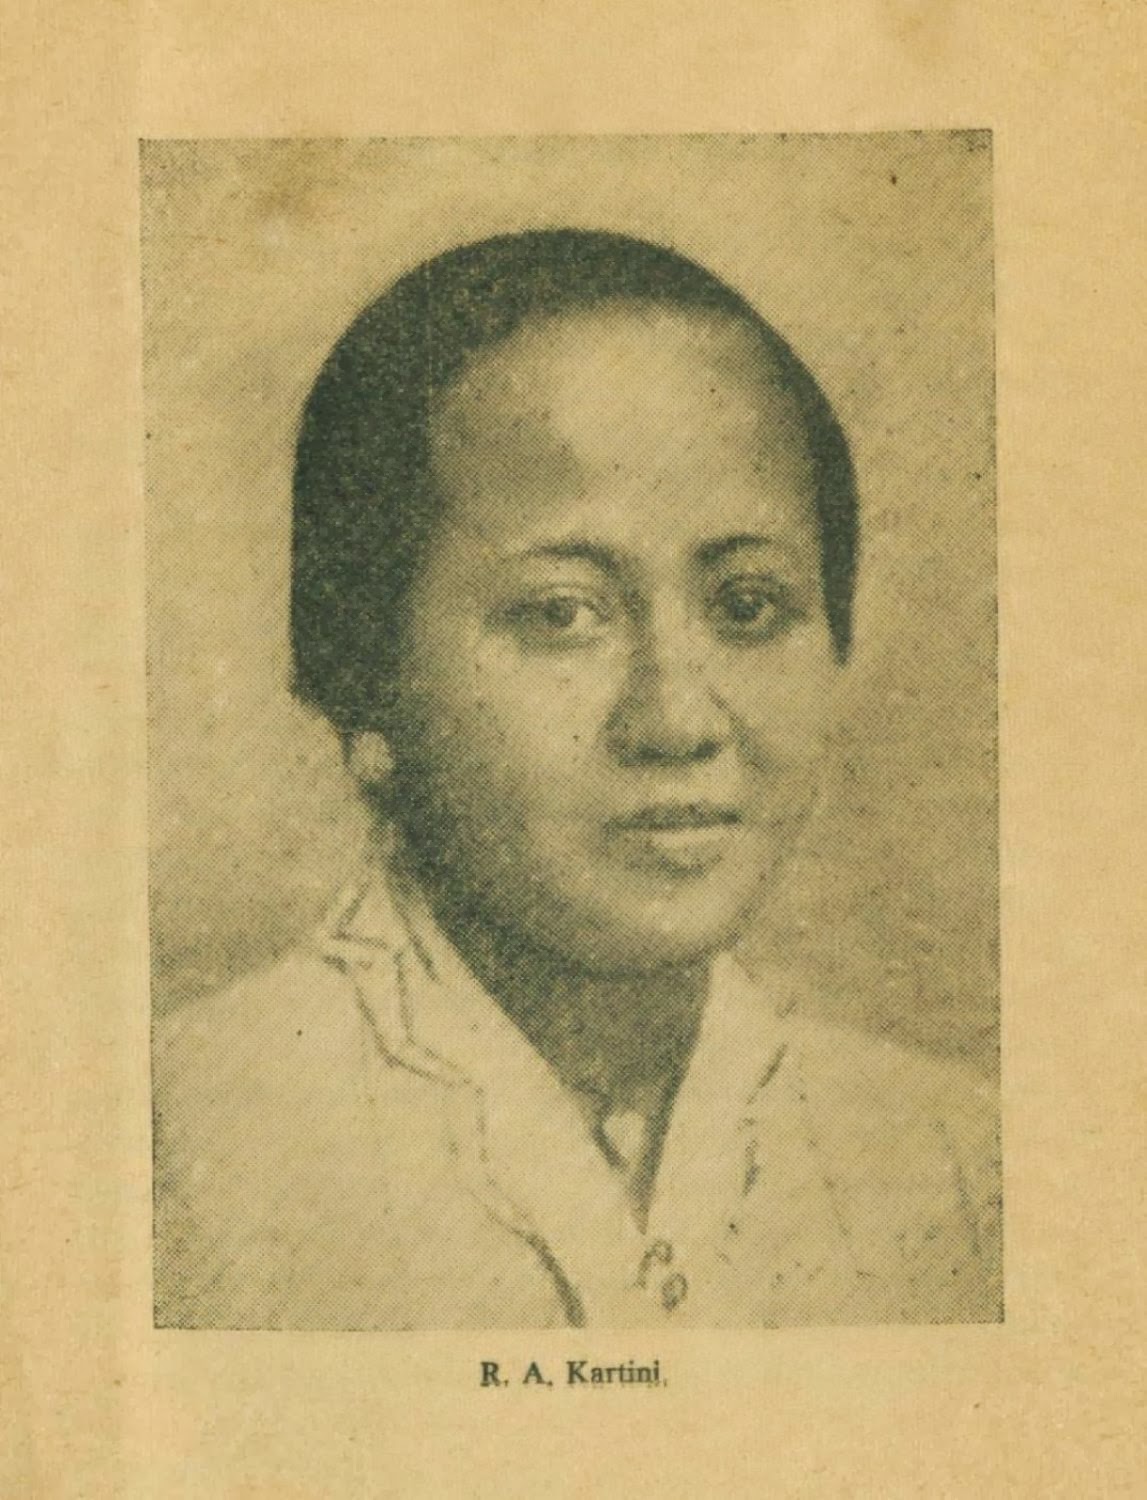 Siapakah Ra Kartini Foto Gambar Freewaremini